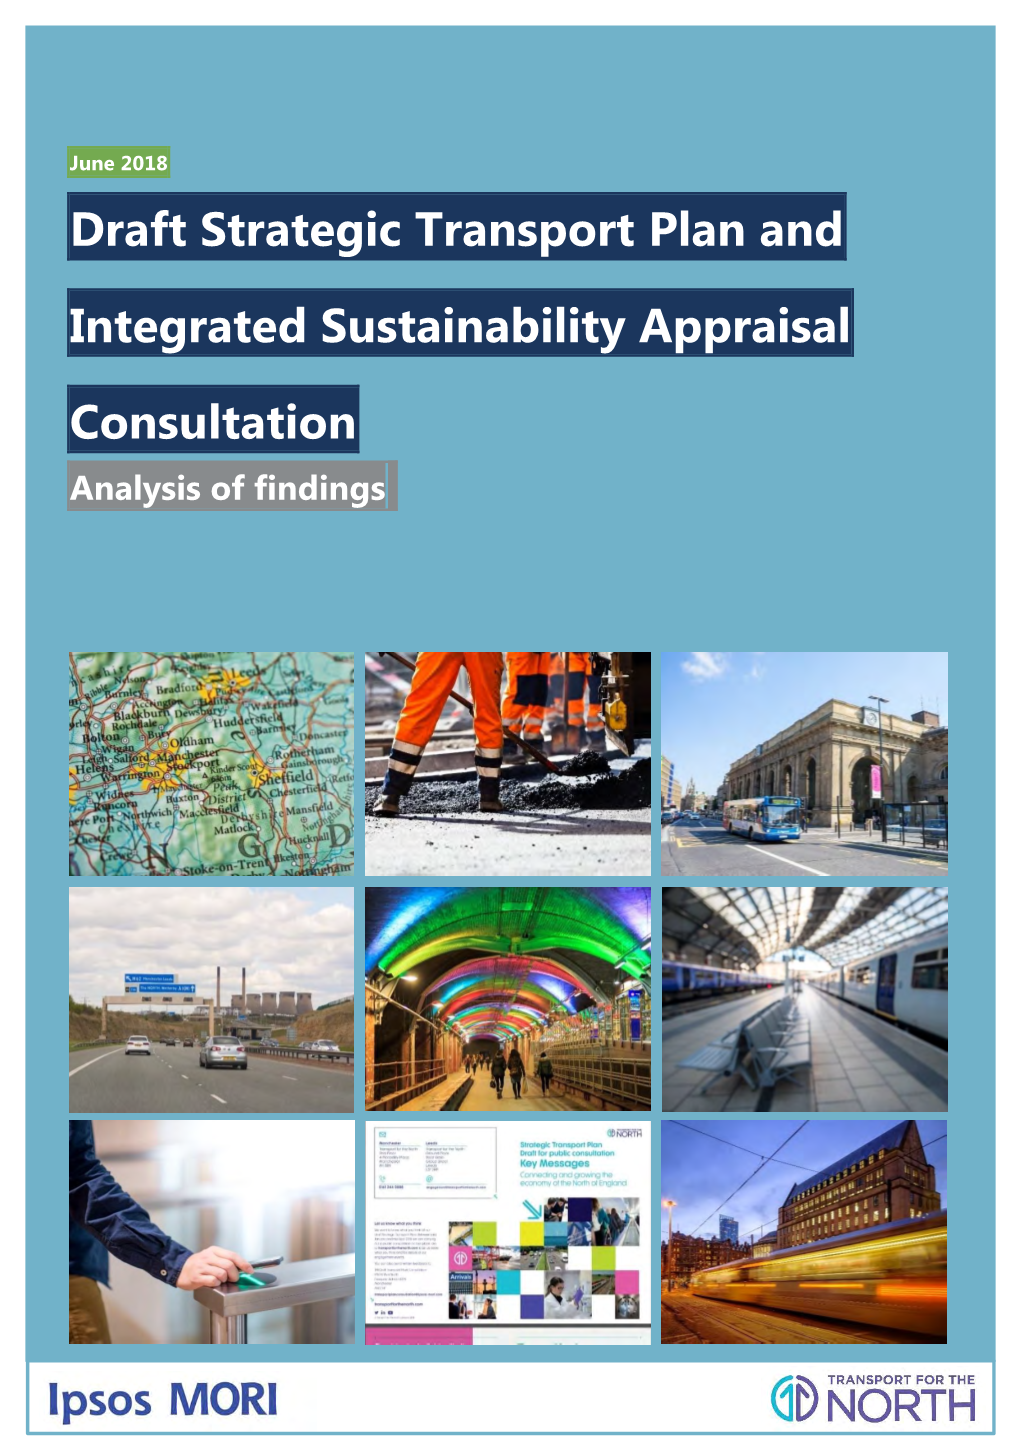 Consultation Responses to Strategic Transport